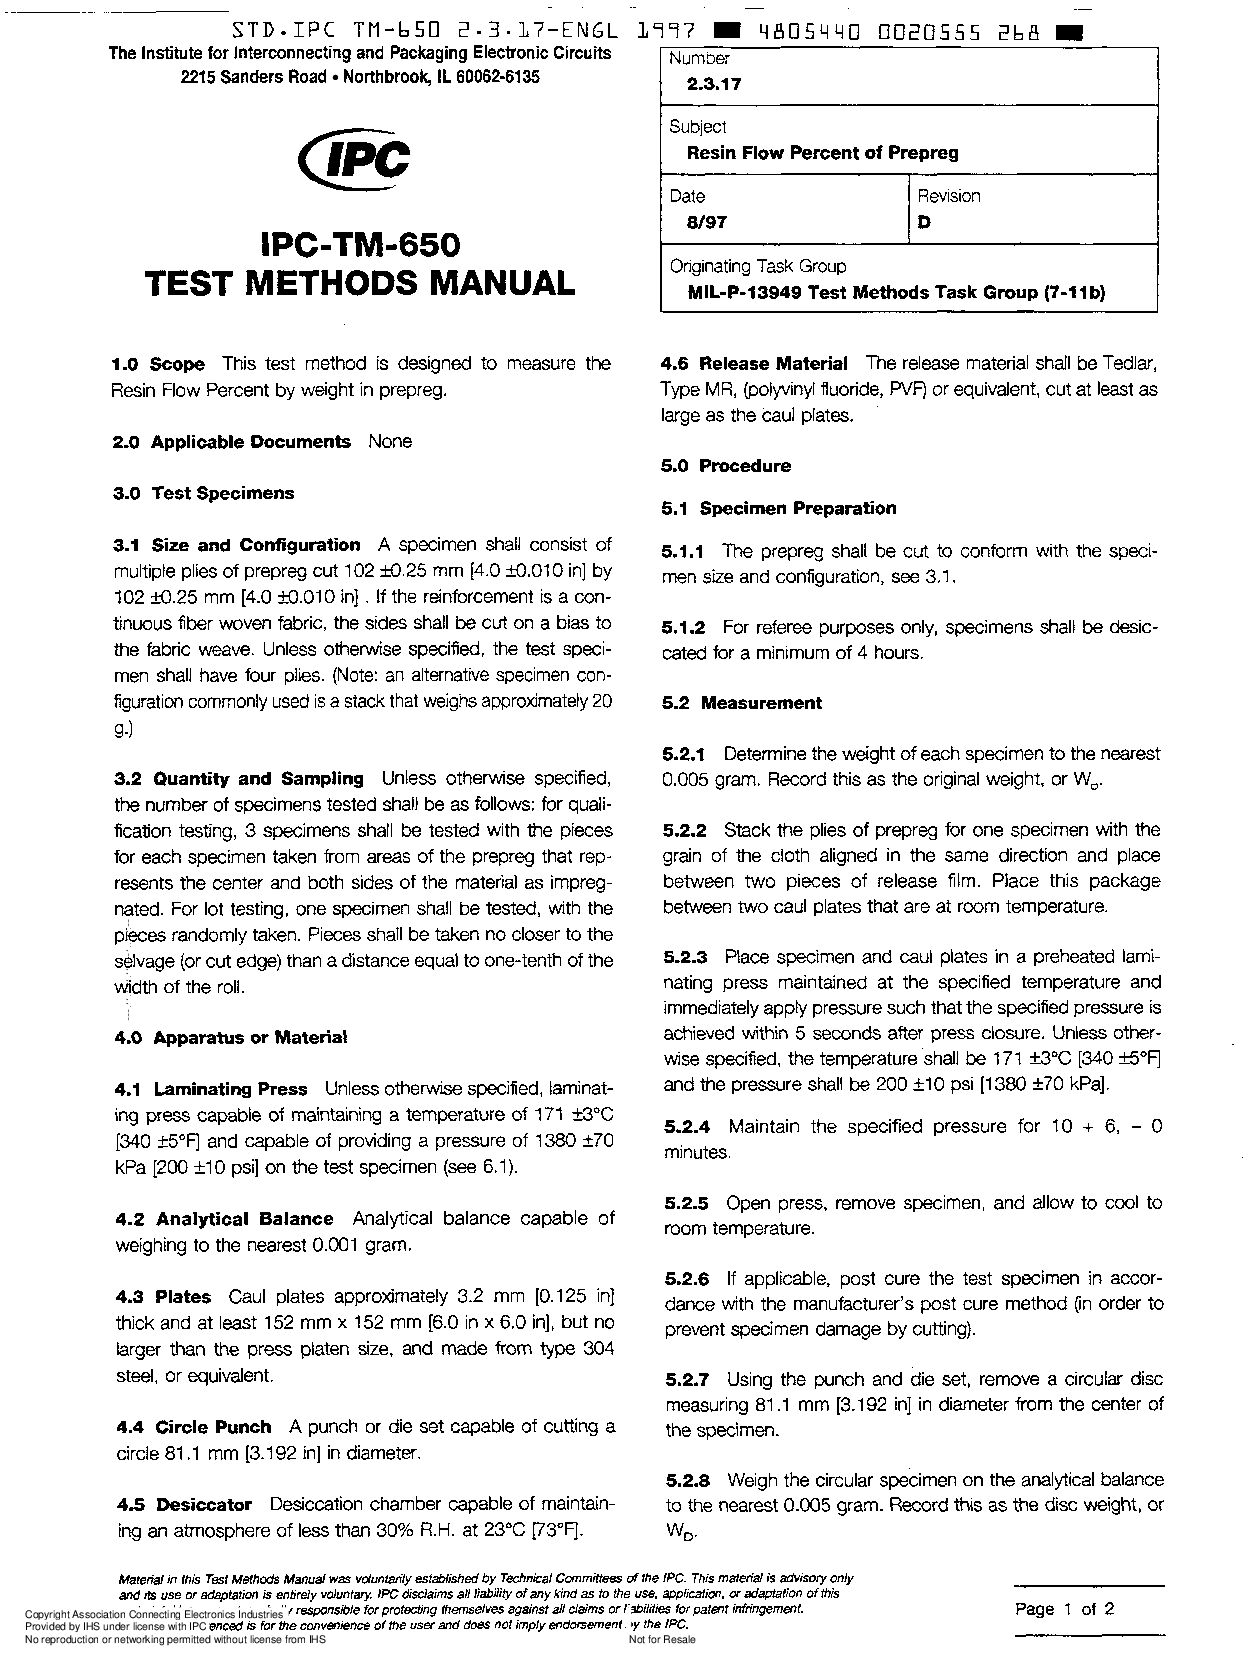 IPC TM-650 2.3.17-1997封面图